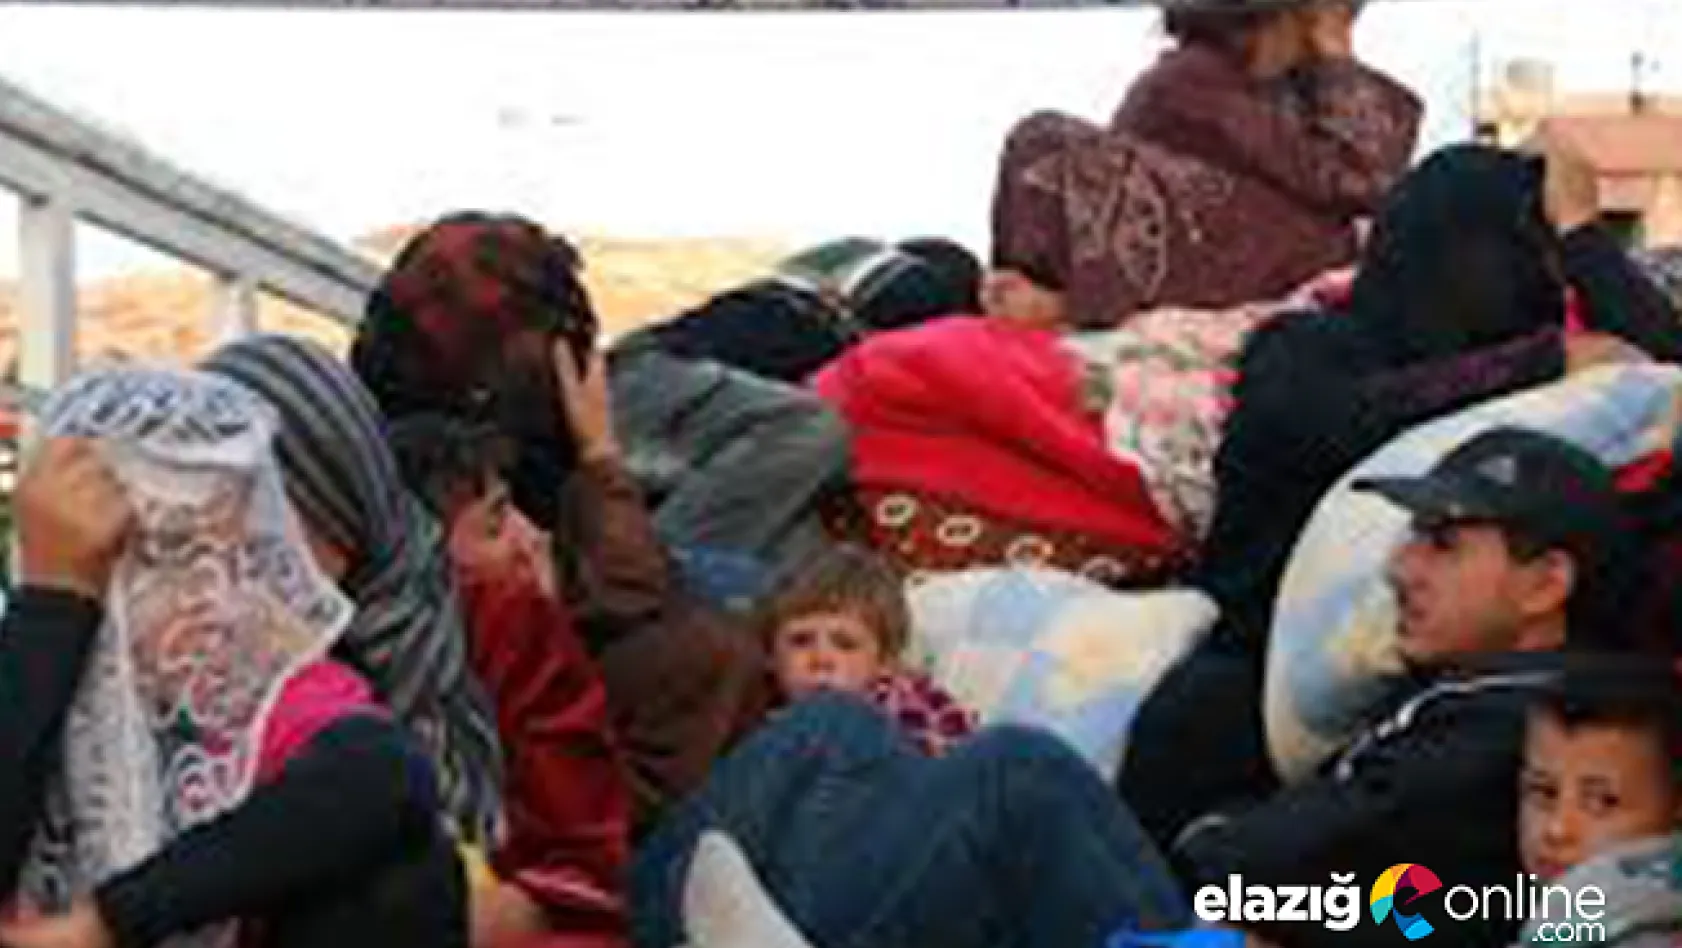 Suriyeli 20 dilenci sınır dışı edilmek üzere gönderildi